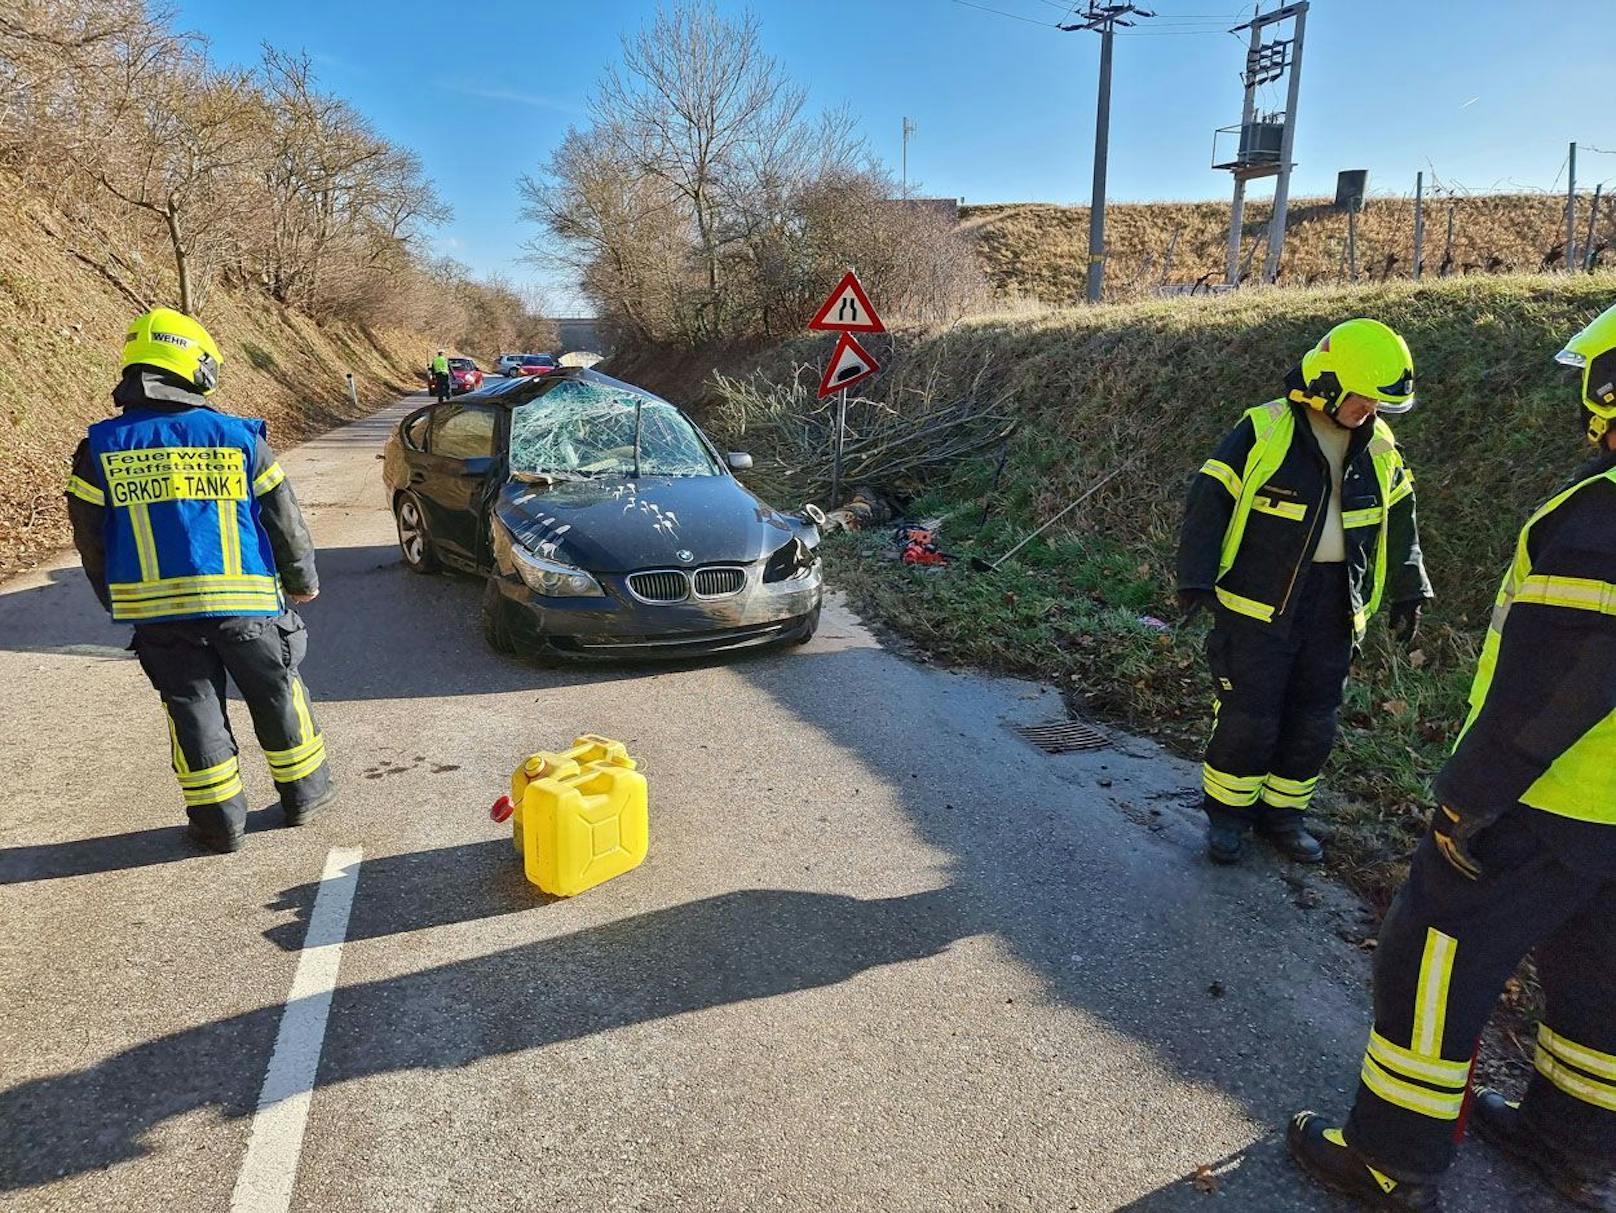 Spektakulärer Unfall im Bezirk Baden: Die Feuerwehr im Einsatz